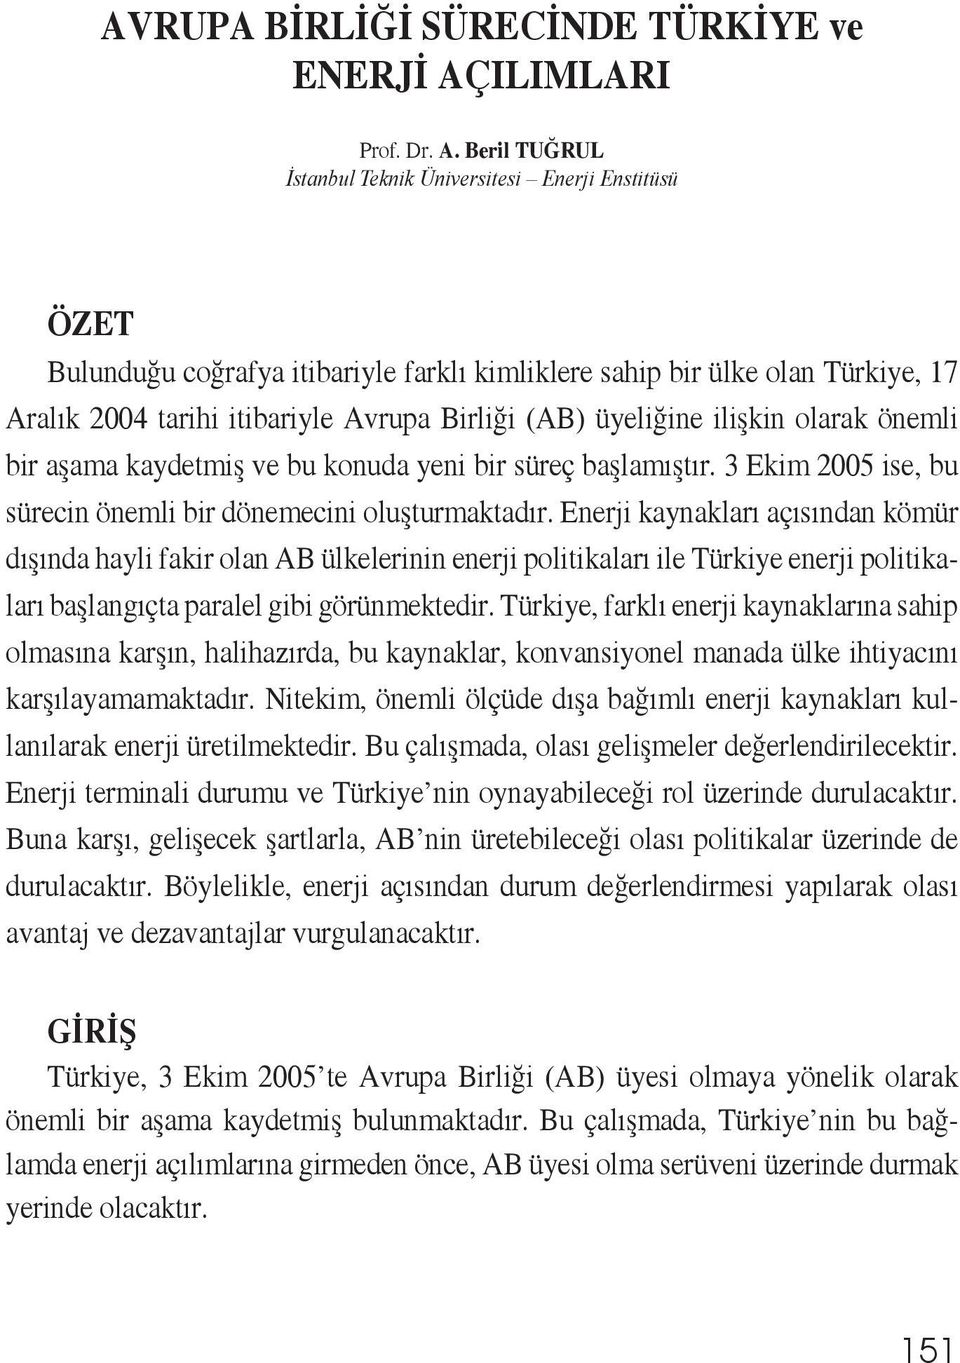 Beril TUĞRUL İstanbul Teknik Üniversitesi Enerji Enstitüsü ÖZET Bulunduğu coğrafya itibariyle farklı kimliklere sahip bir ülke olan Türkiye, 17 Aralık 2004 tarihi itibariyle Avrupa Birliği (AB)